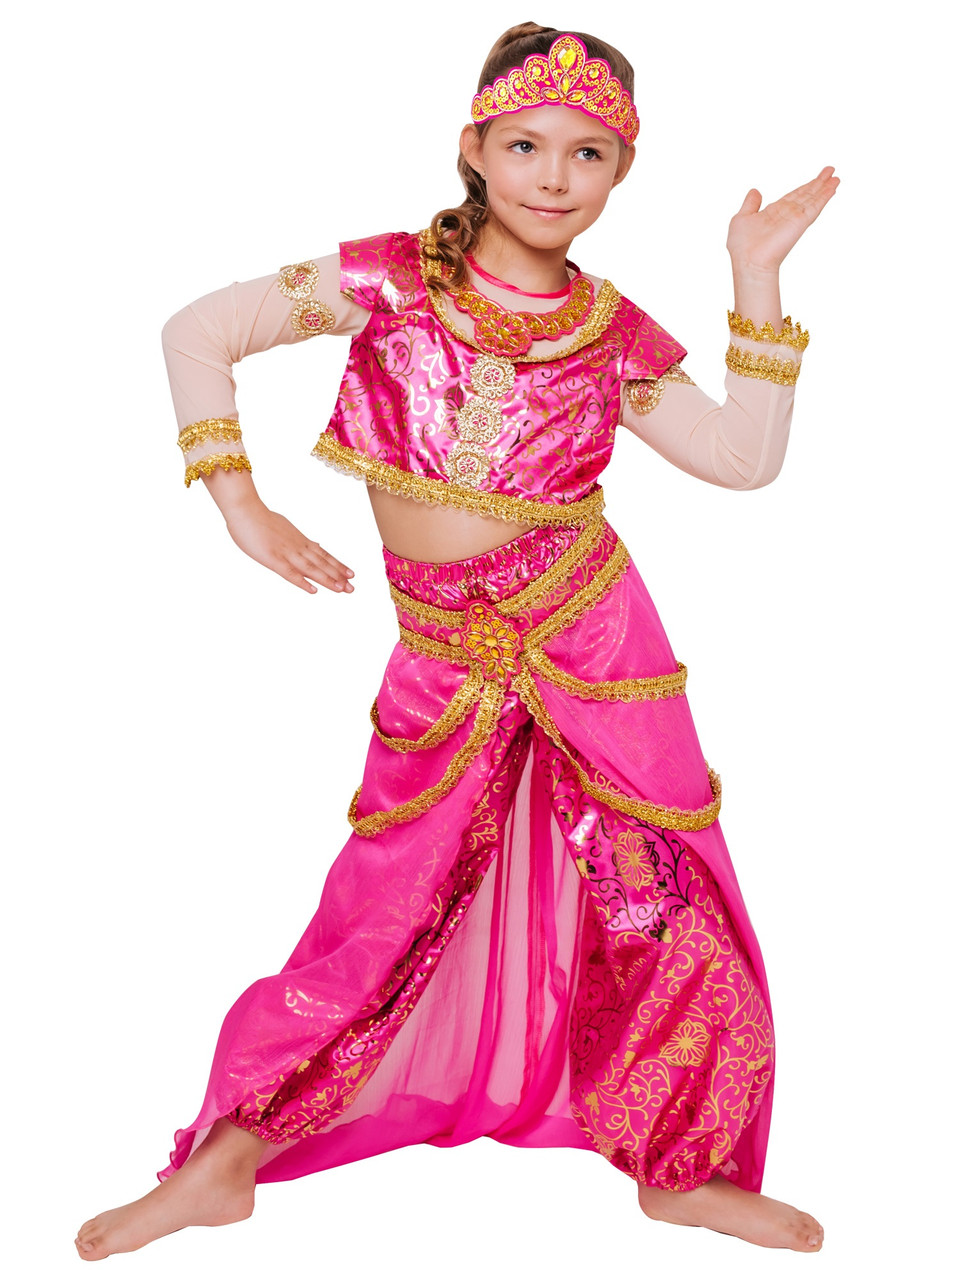 Детский карнавальный костюм Принцесса Востока Пуговка 2117 к-21, фото 1